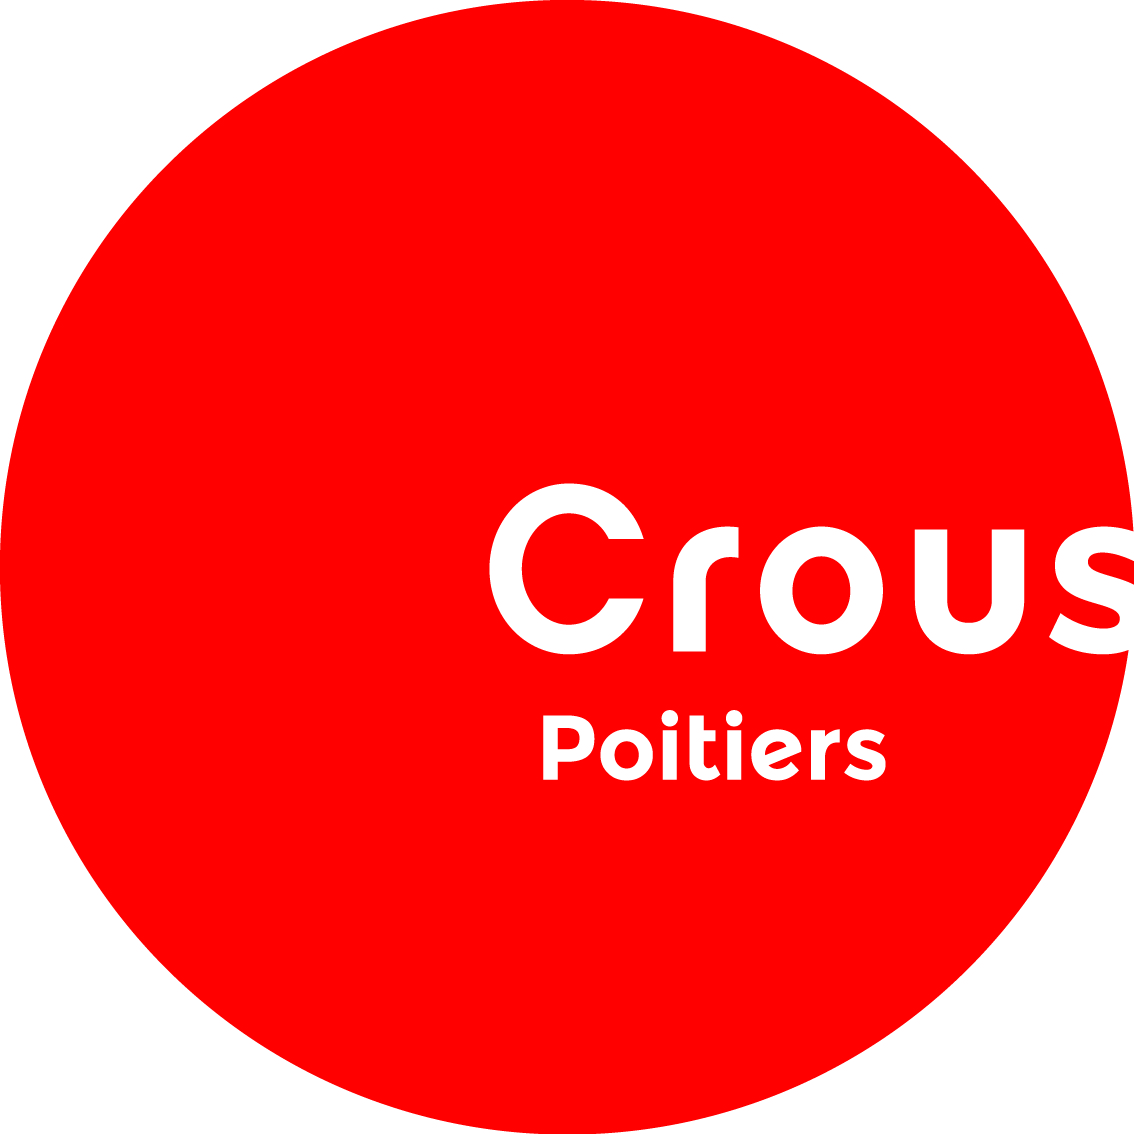 Crous de Poitiers